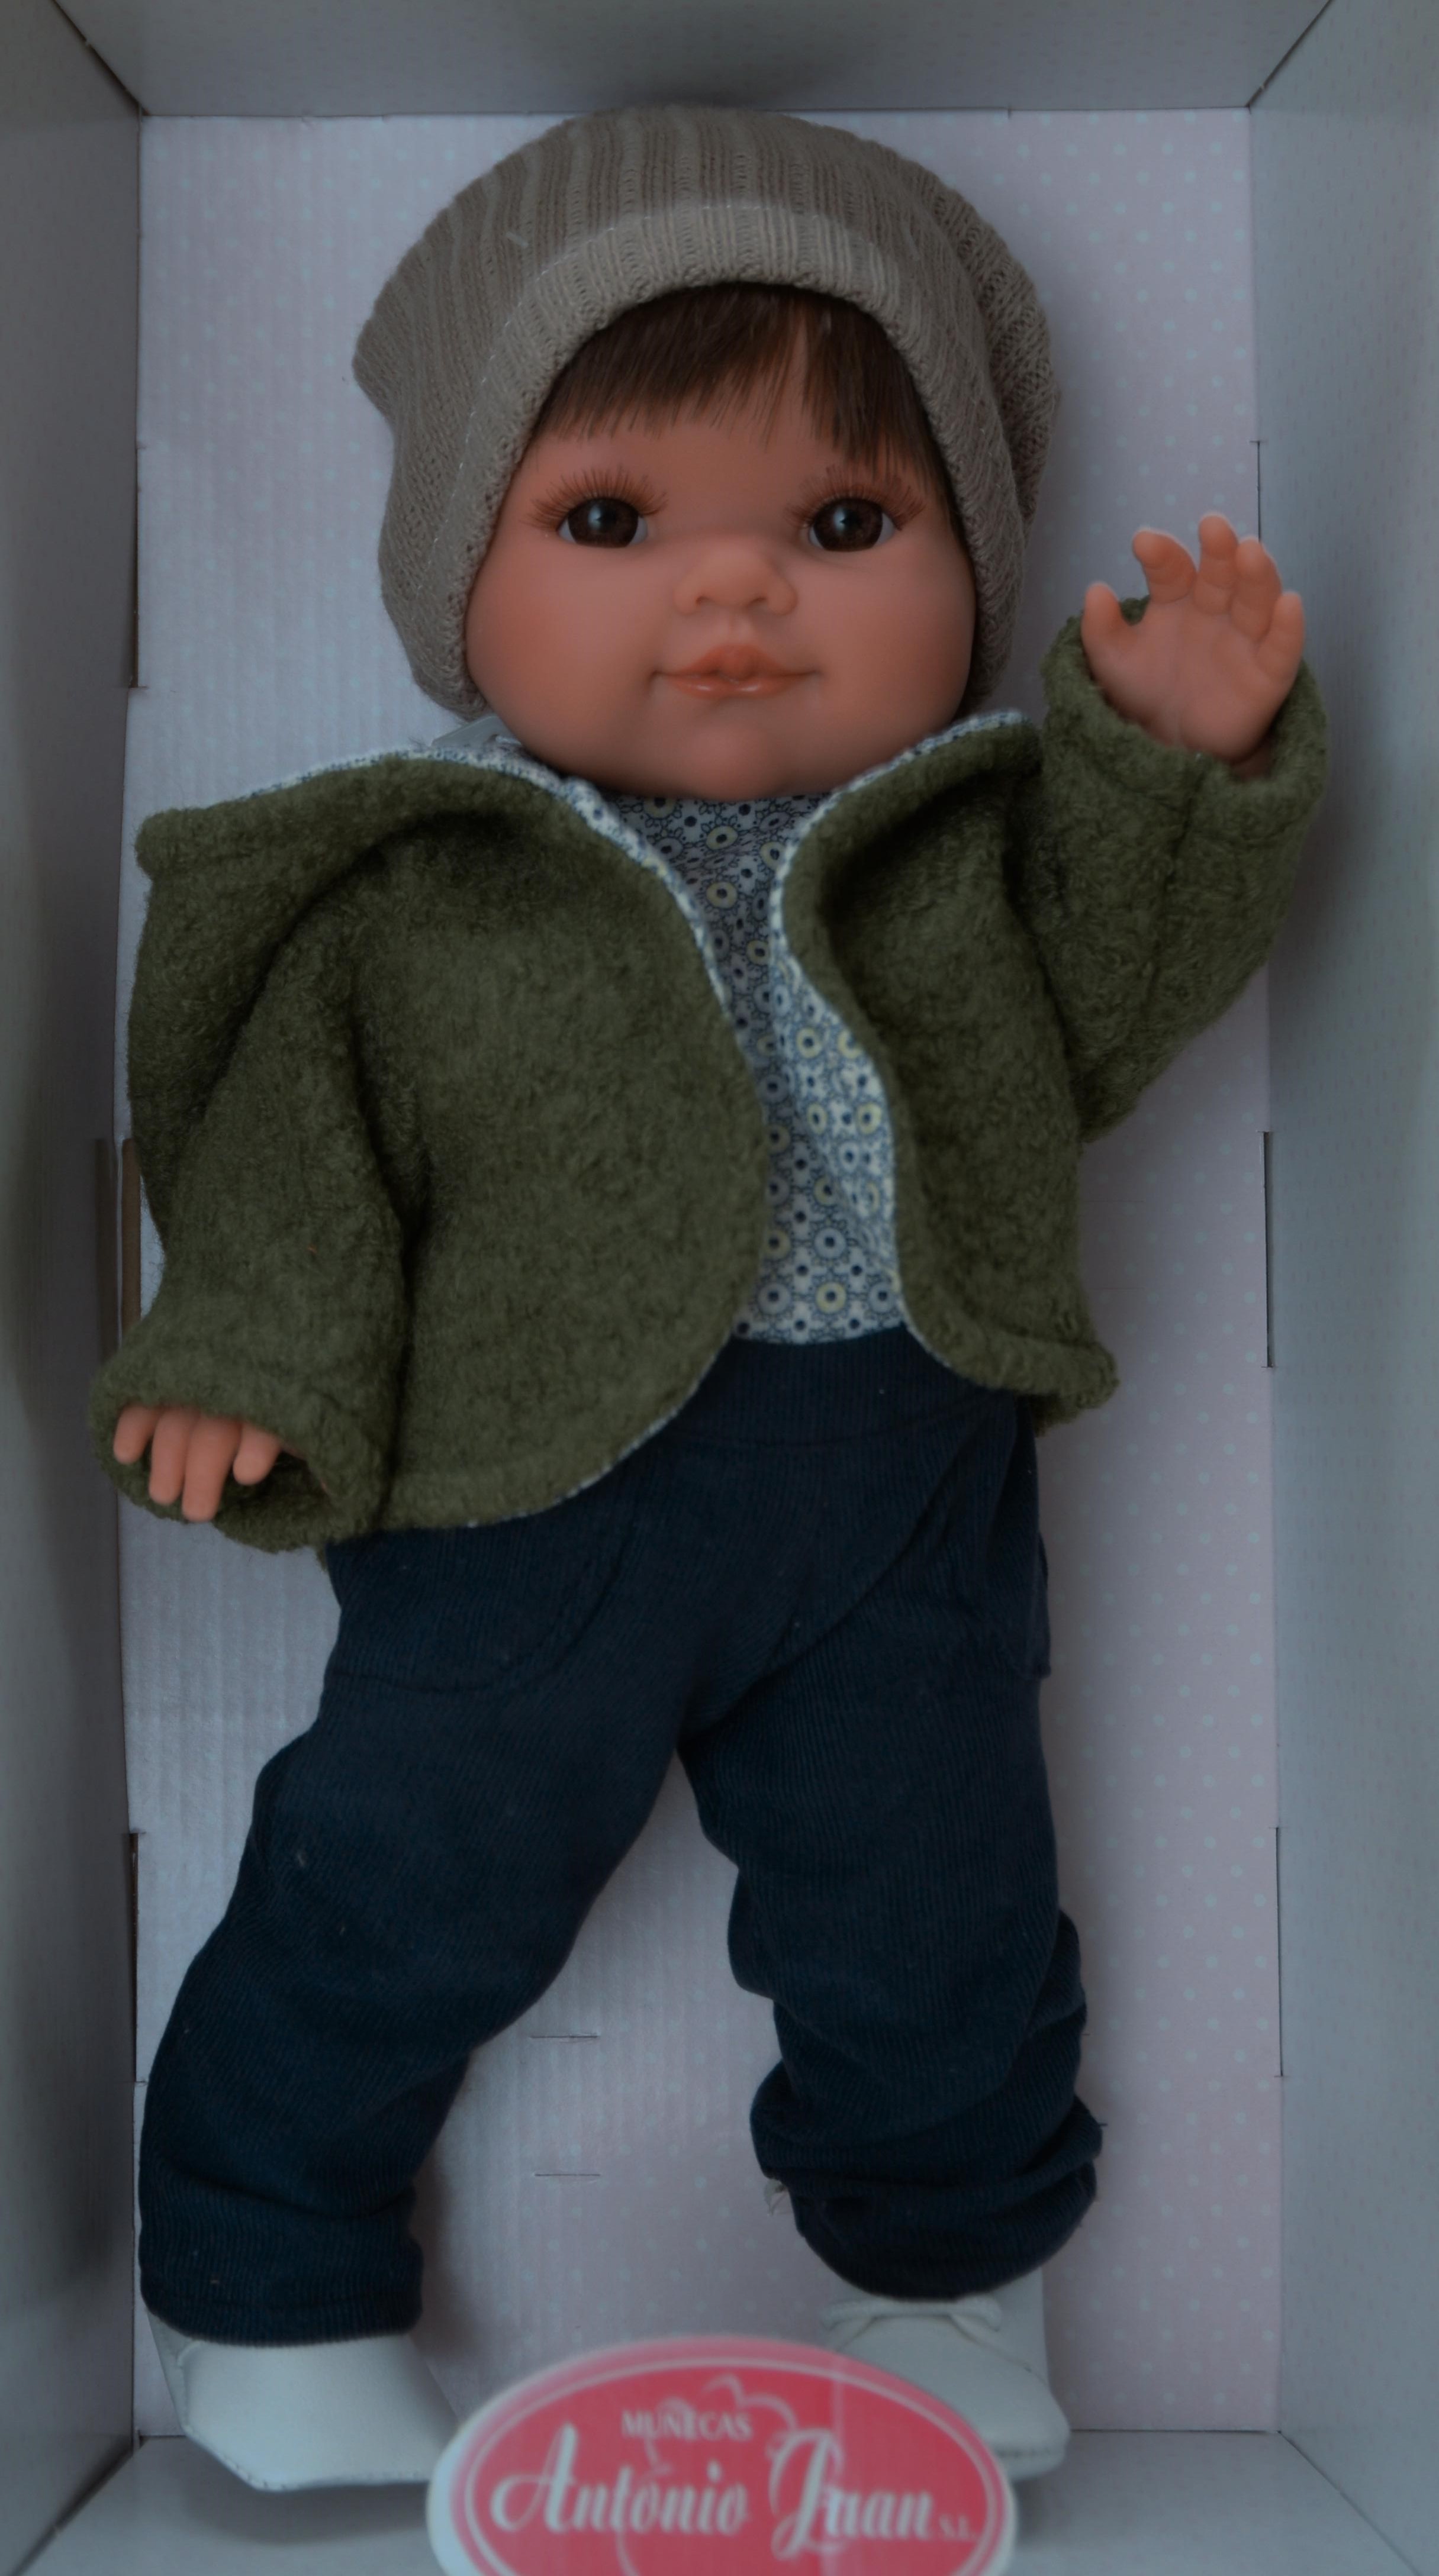 Realistická panenka chlapeček Farito v zimním od firmy Antonio Juan